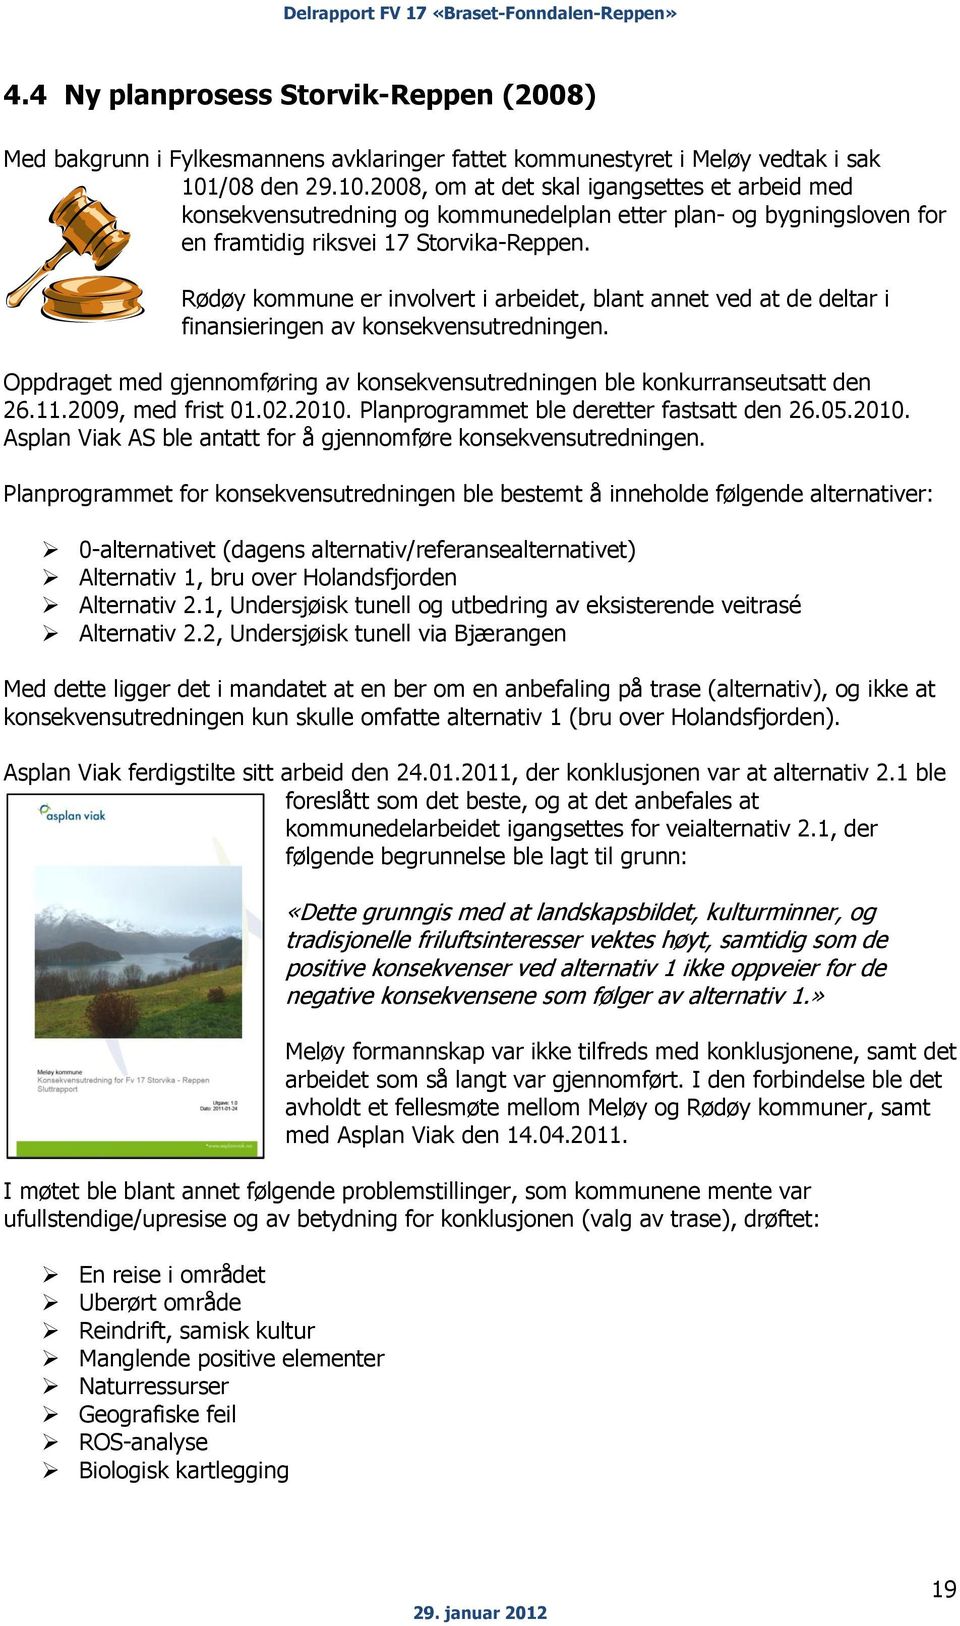 Rødøy kommune er involvert i arbeidet, blant annet ved at de deltar i finansieringen av konsekvensutredningen. Oppdraget med gjennomføring av konsekvensutredningen ble konkurranseutsatt den 26.11.